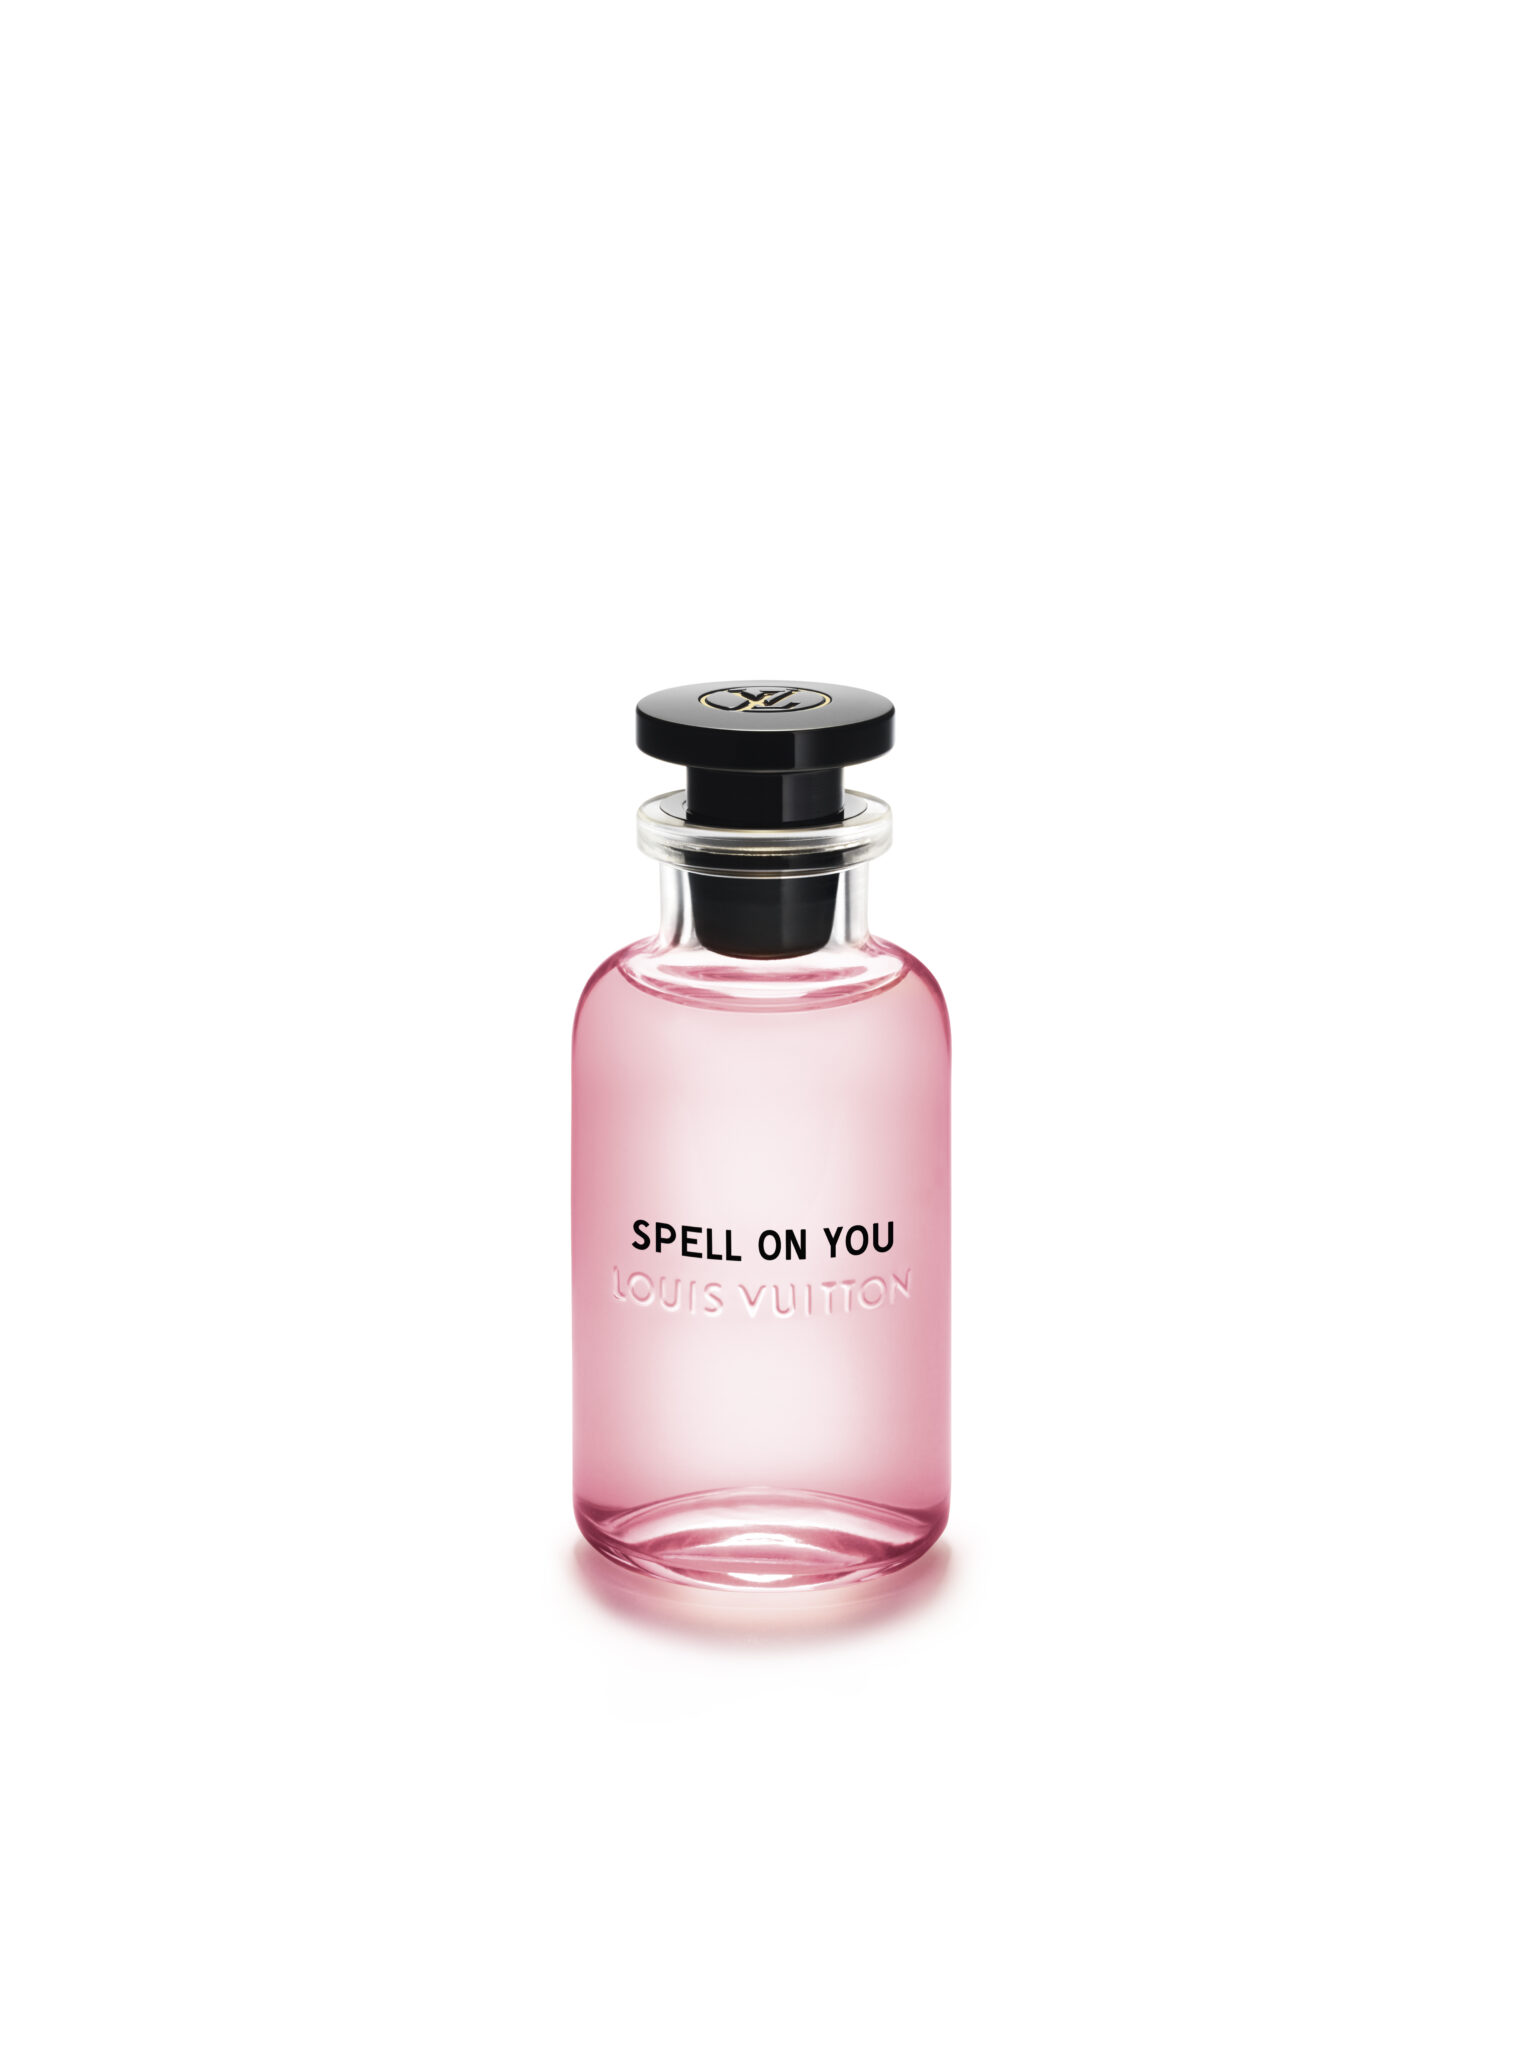 「ルイ・ヴィトン」から新作香水「スペル オン ユー」が誕生 - TOKION